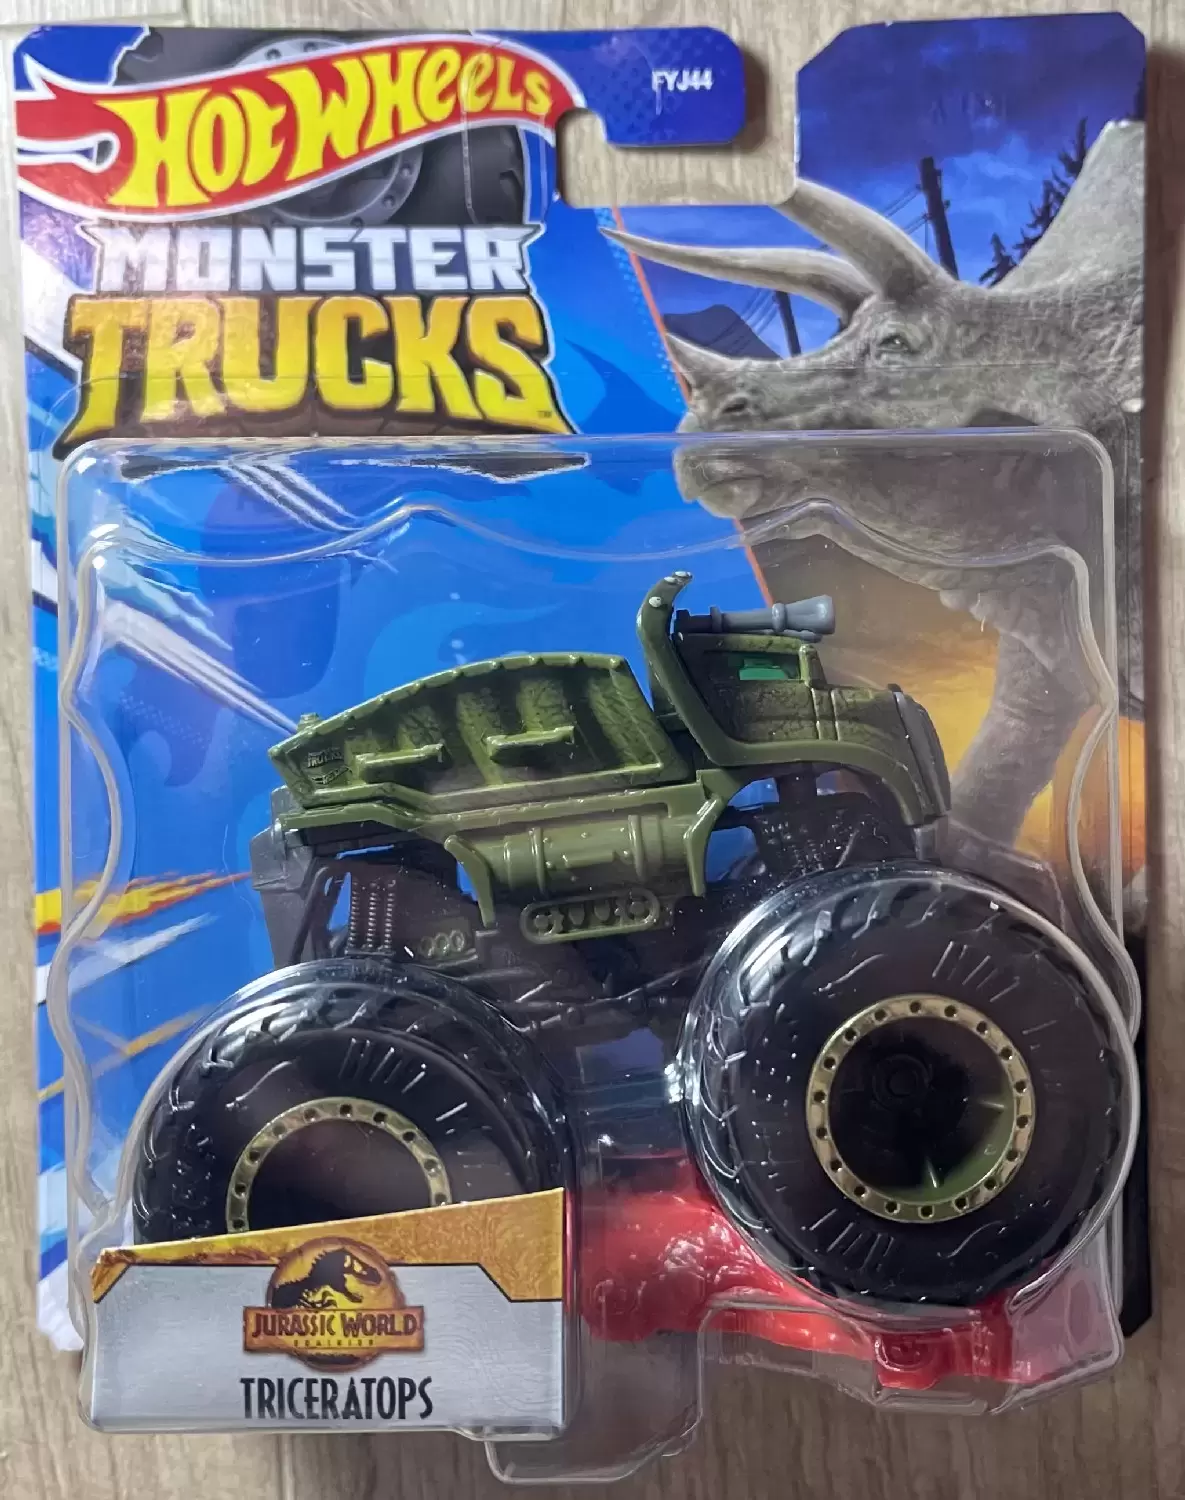 Monster Trucks - Jurassic World - Triceratops